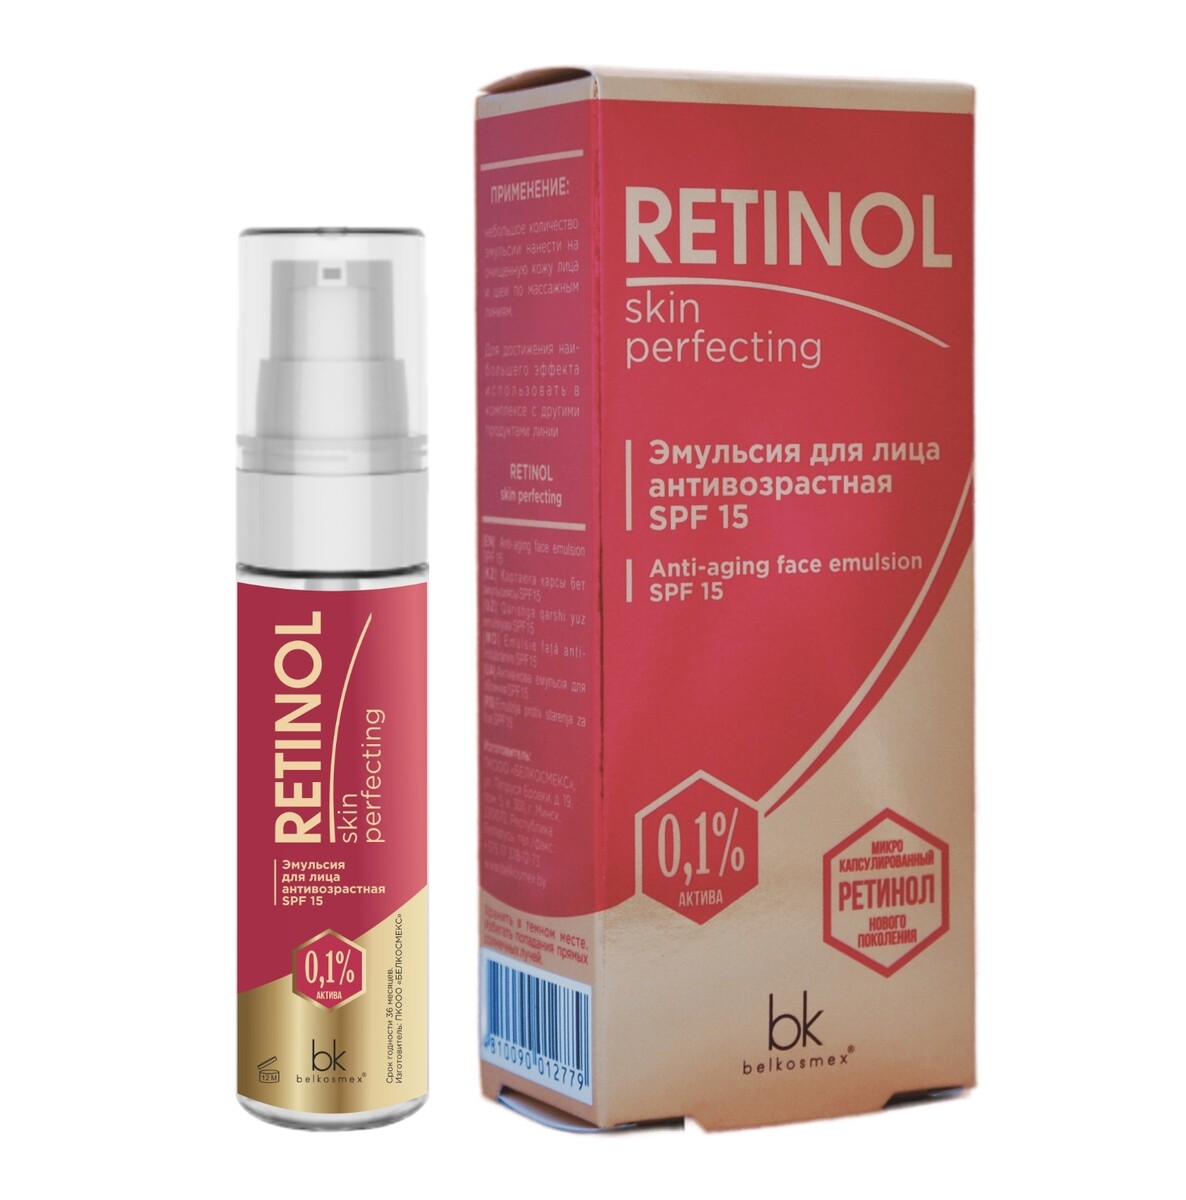 Retinol skin perfecting эмульсия для лица антивозрастная spf 15 30г набор skigo 63653 skin wax stick easy glide 10°с 10°с